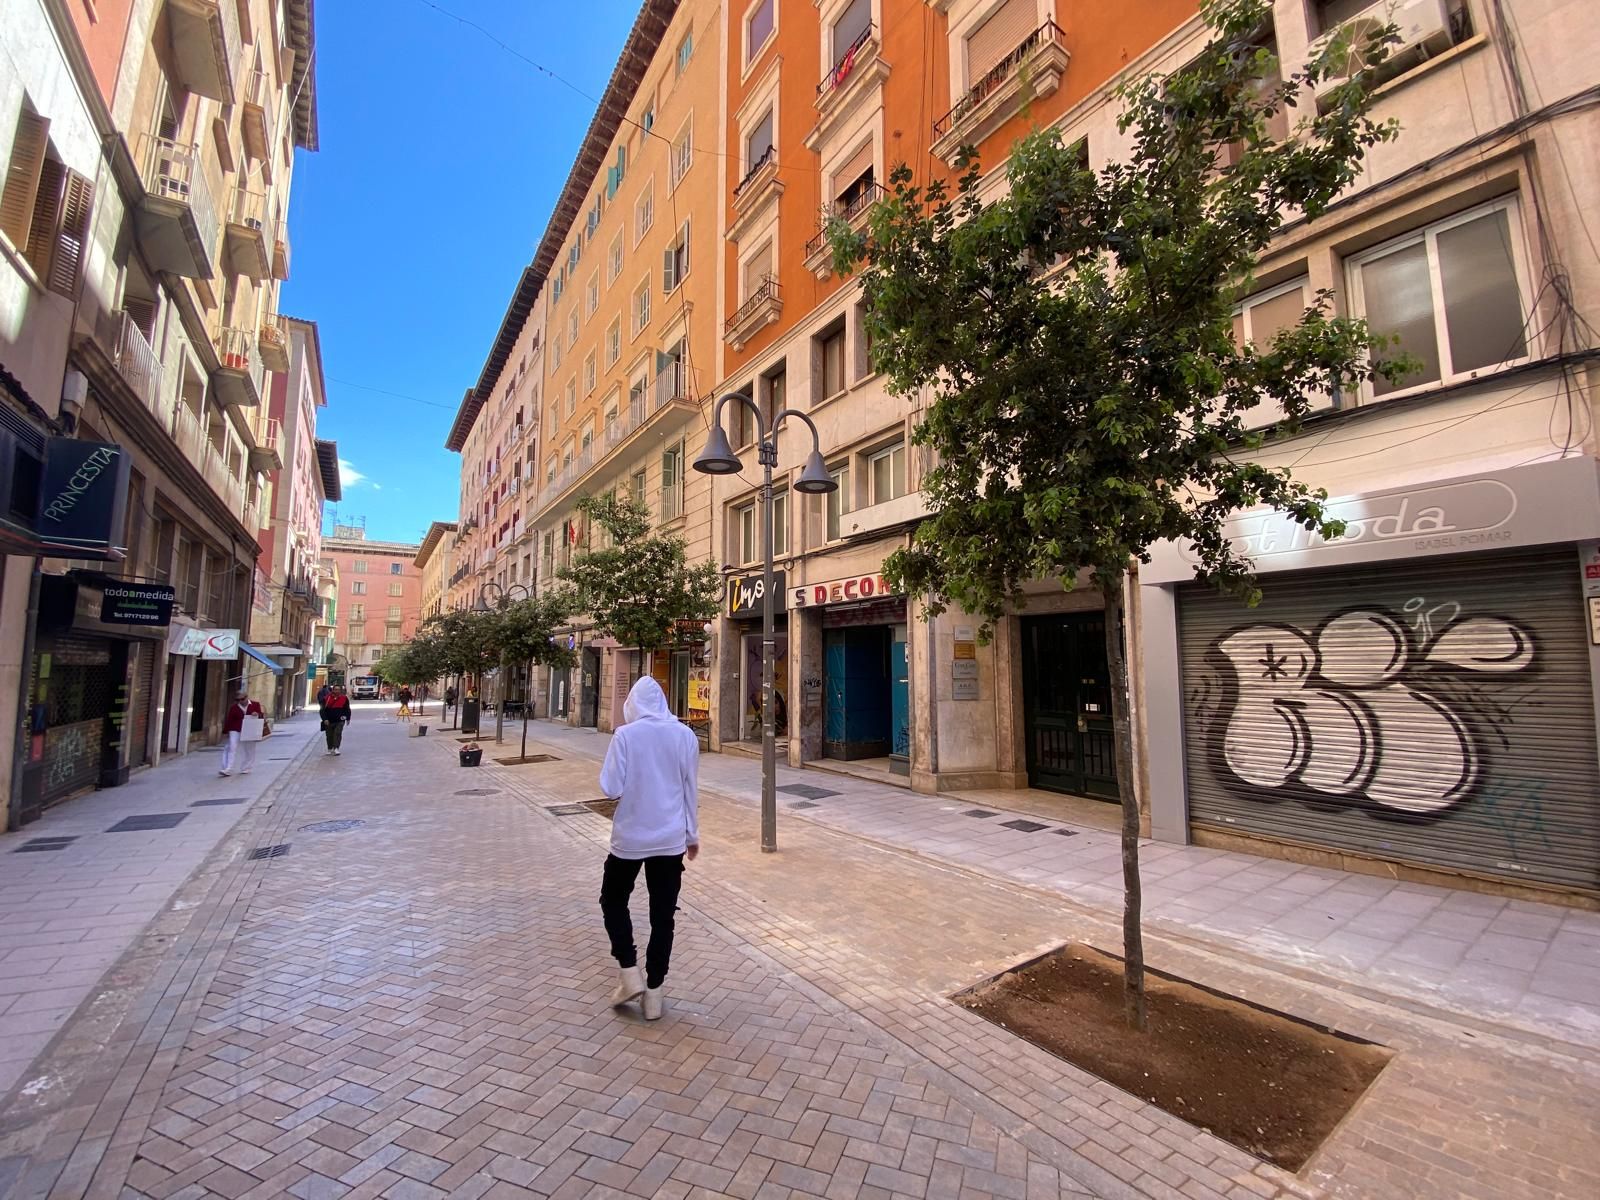 Las fotos de la calle Velázquez de Palma tras la eliminación de la trama verde